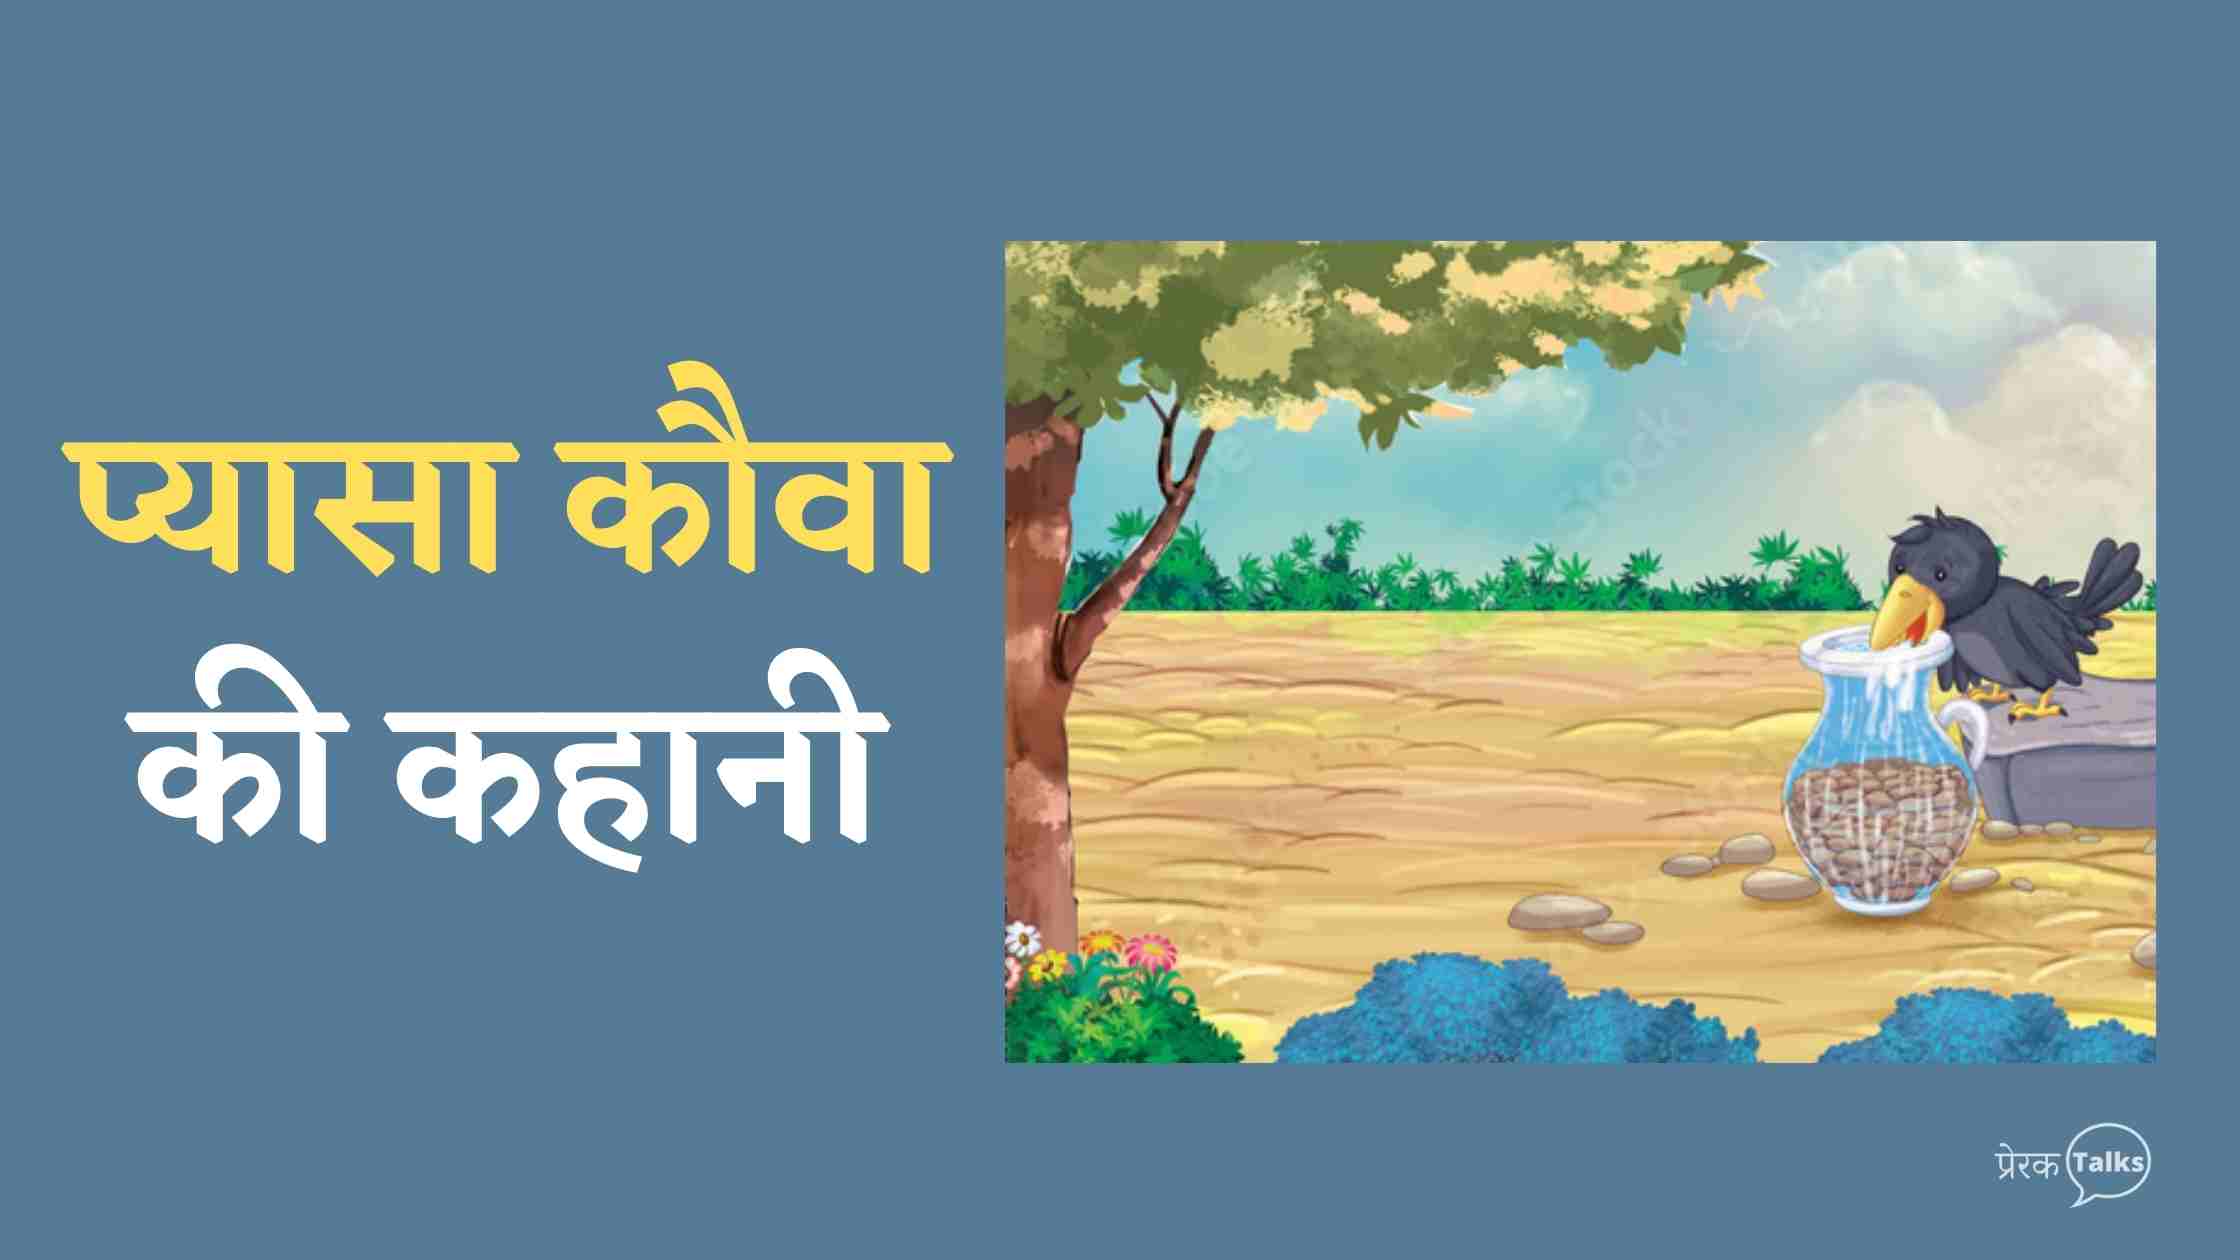 प्यासा कौवा की कहानी | Ek pyasa kauwa ki kahani in hindi